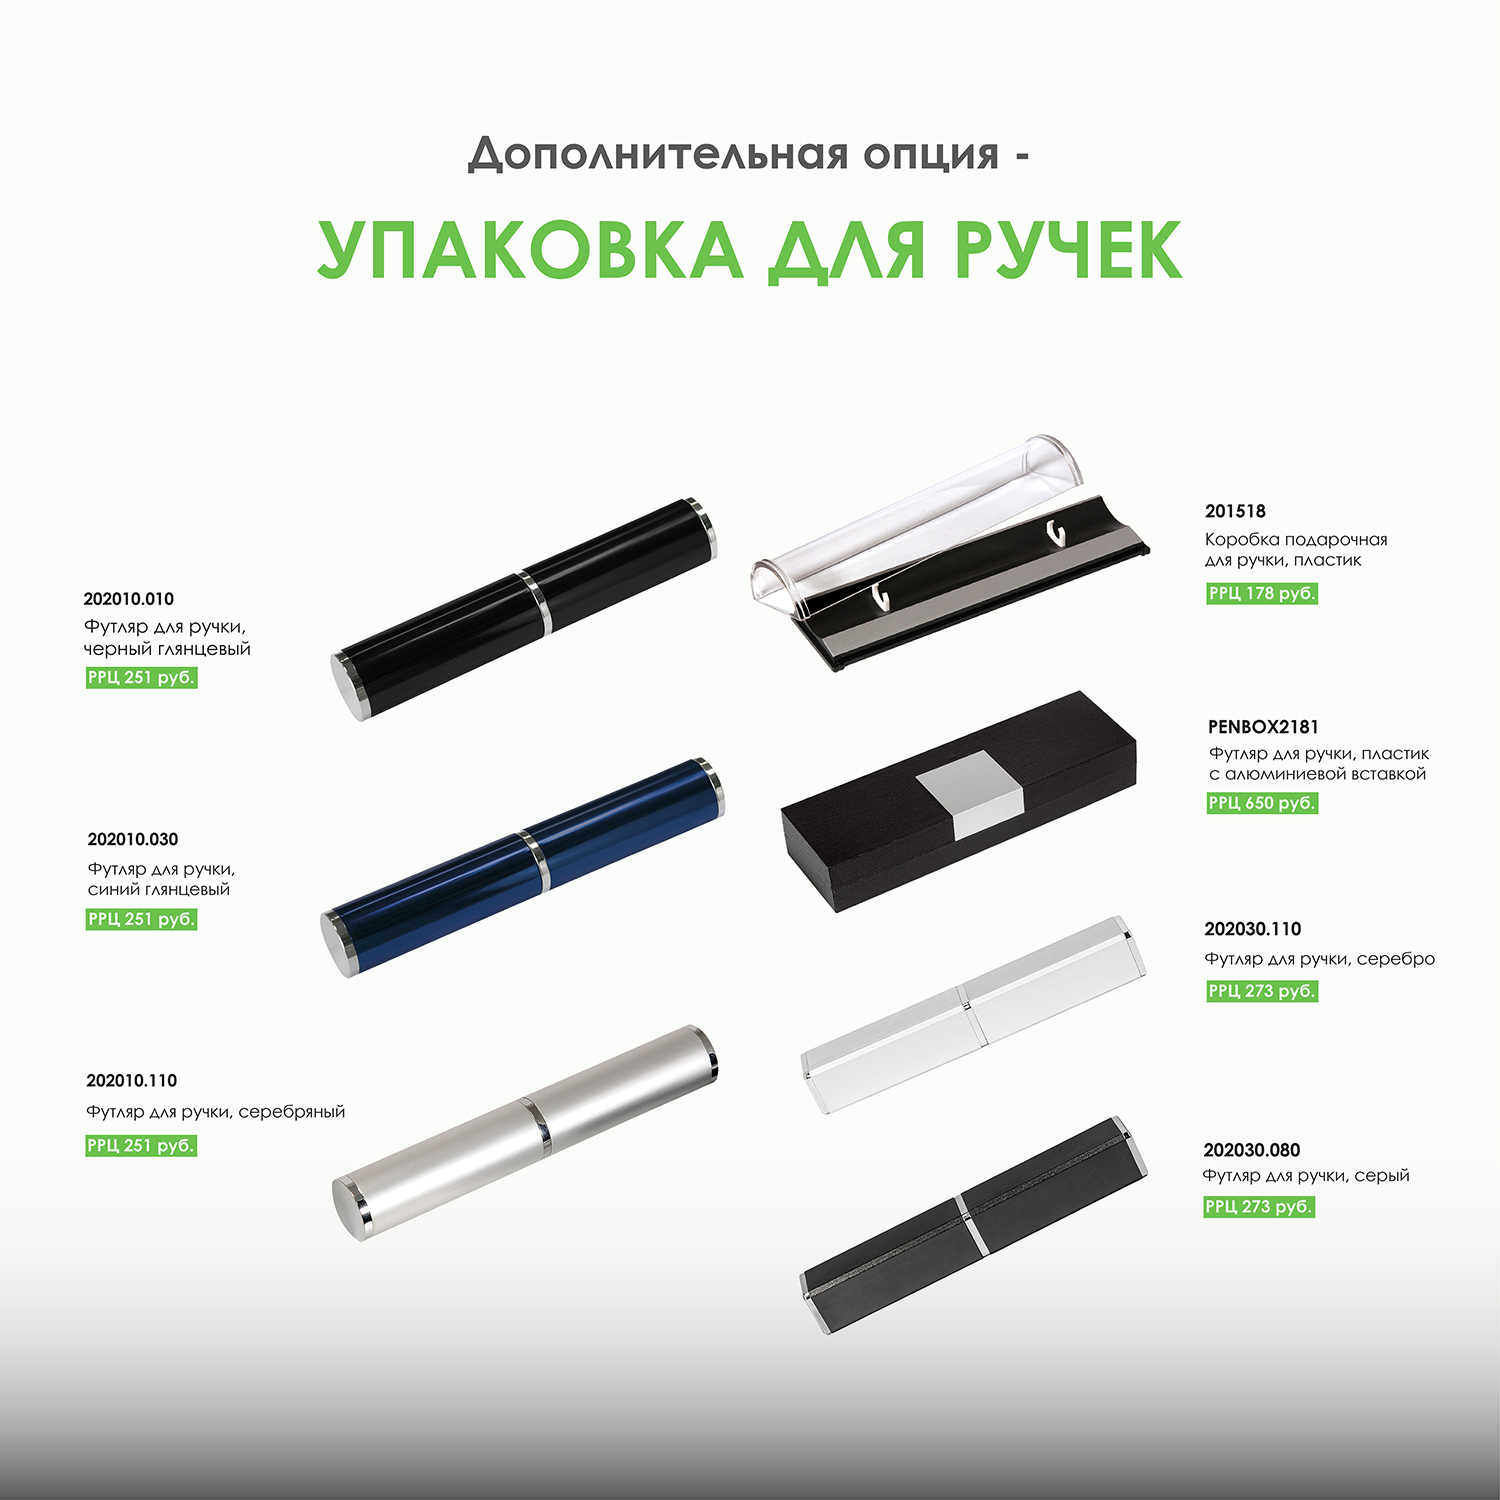 Шариковая ручка Alpha Neo, зеленая